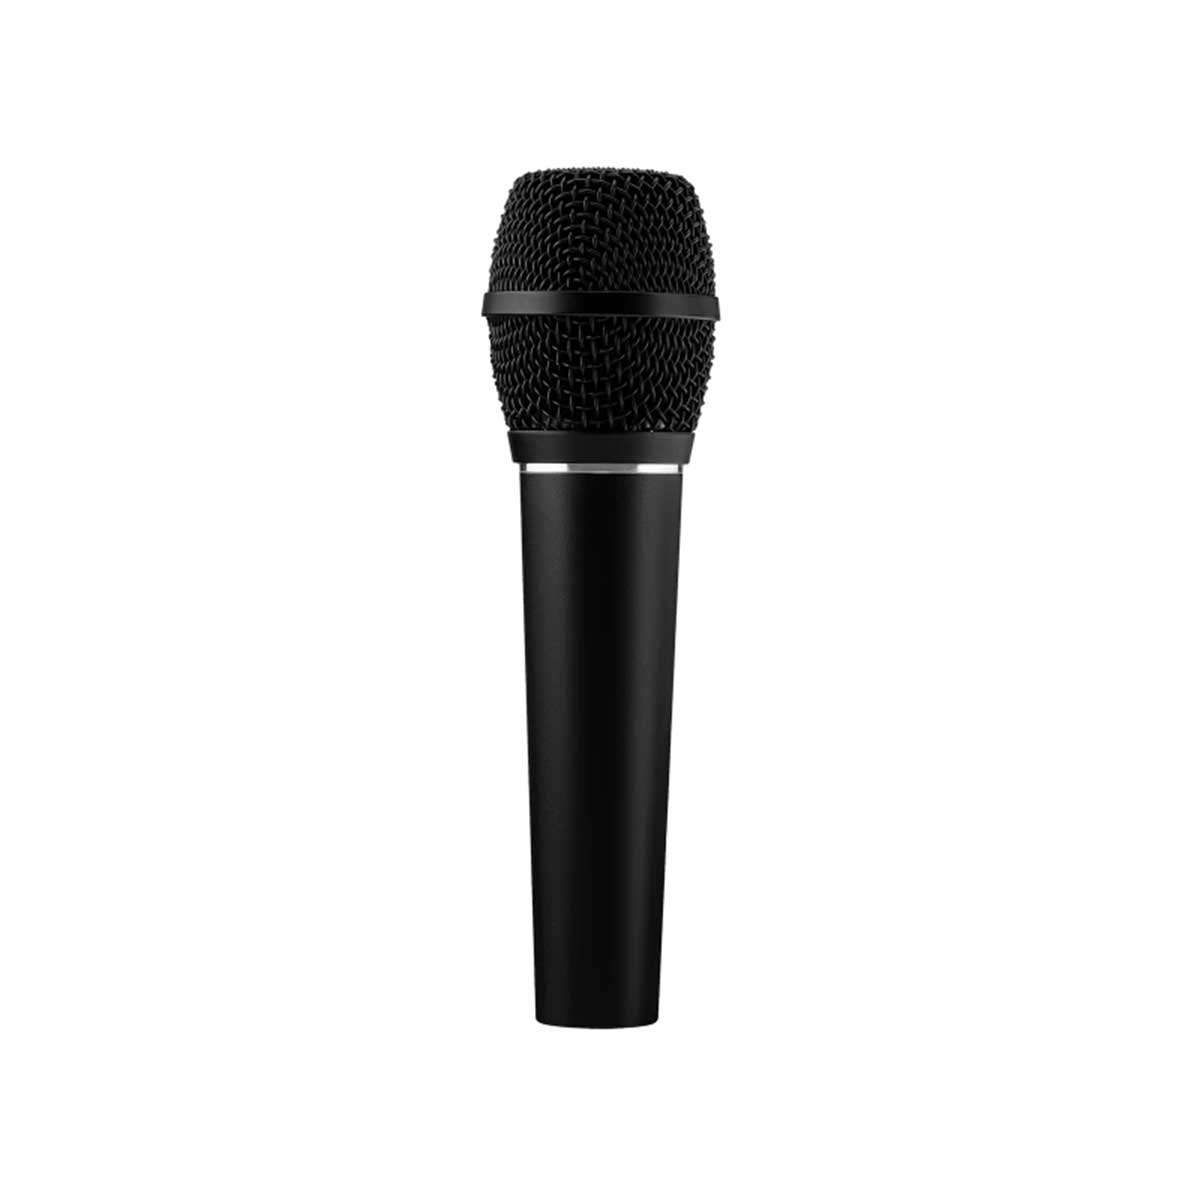 Earthworks SR117 Condenser Vocal Microphone